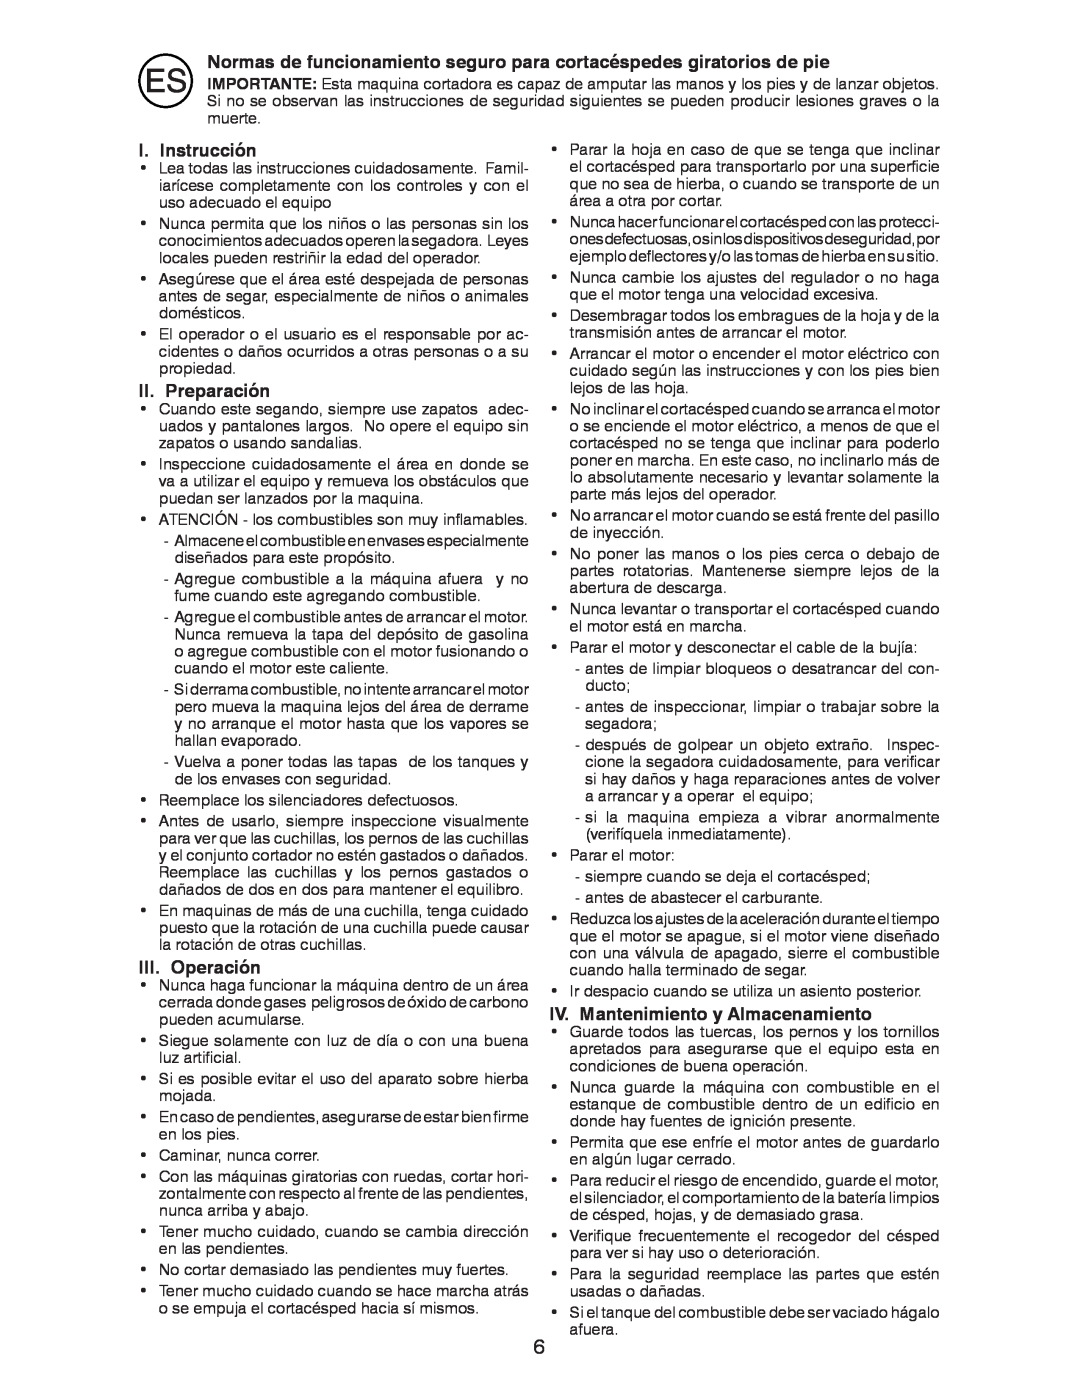 Husqvarna R52SVL instruction manual I. Instrucción, II. Preparación, III. Operación, IV. Mantenimiento y Almacenamiento 